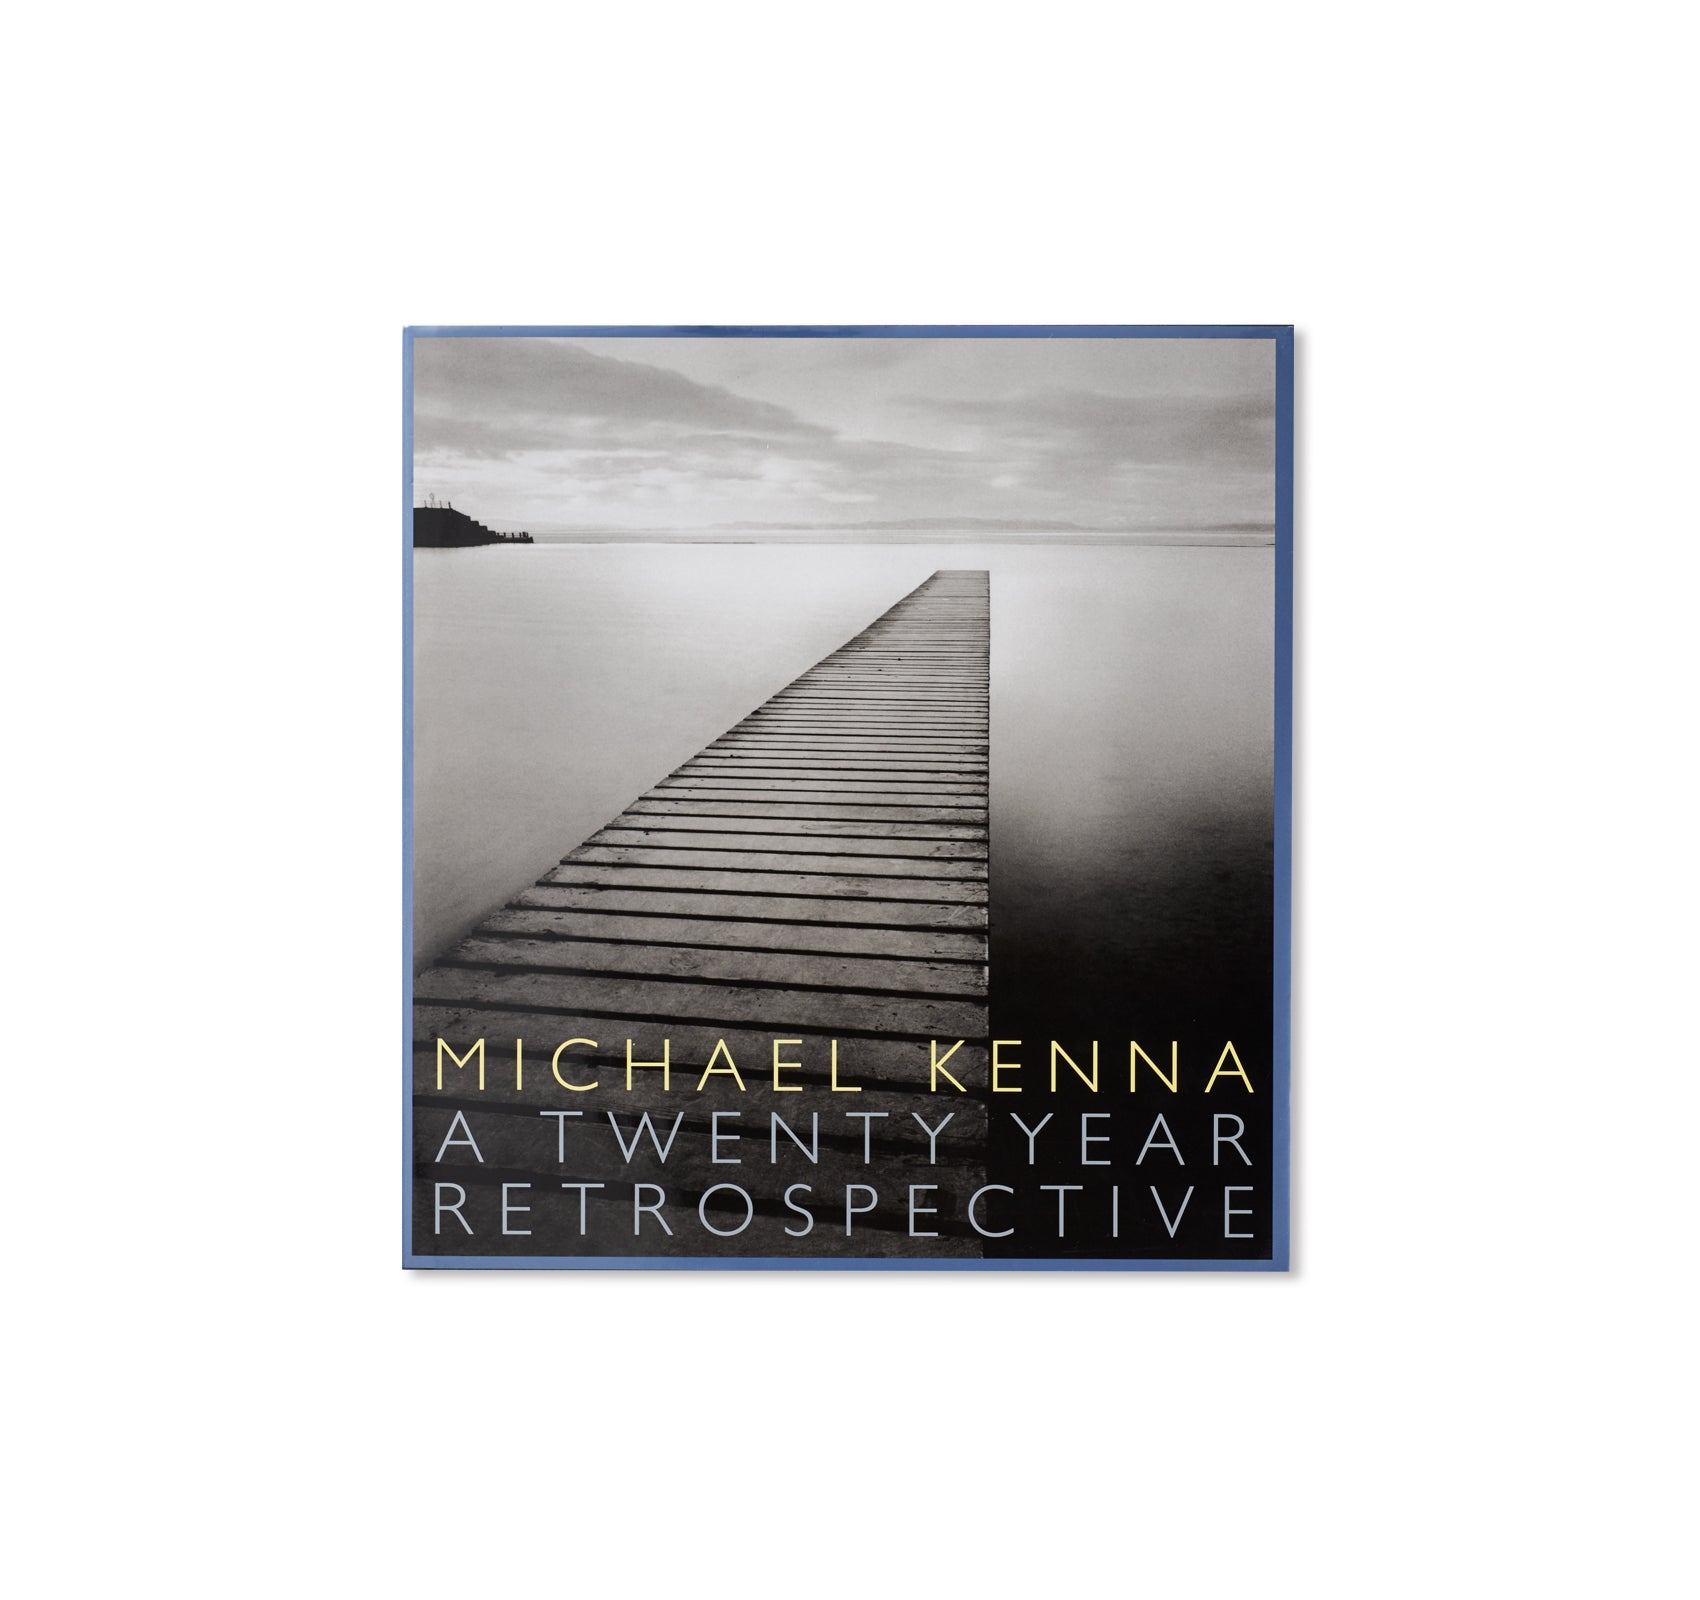 A TWENTY YEAR RETROSPECTIVE by Michael Kenna